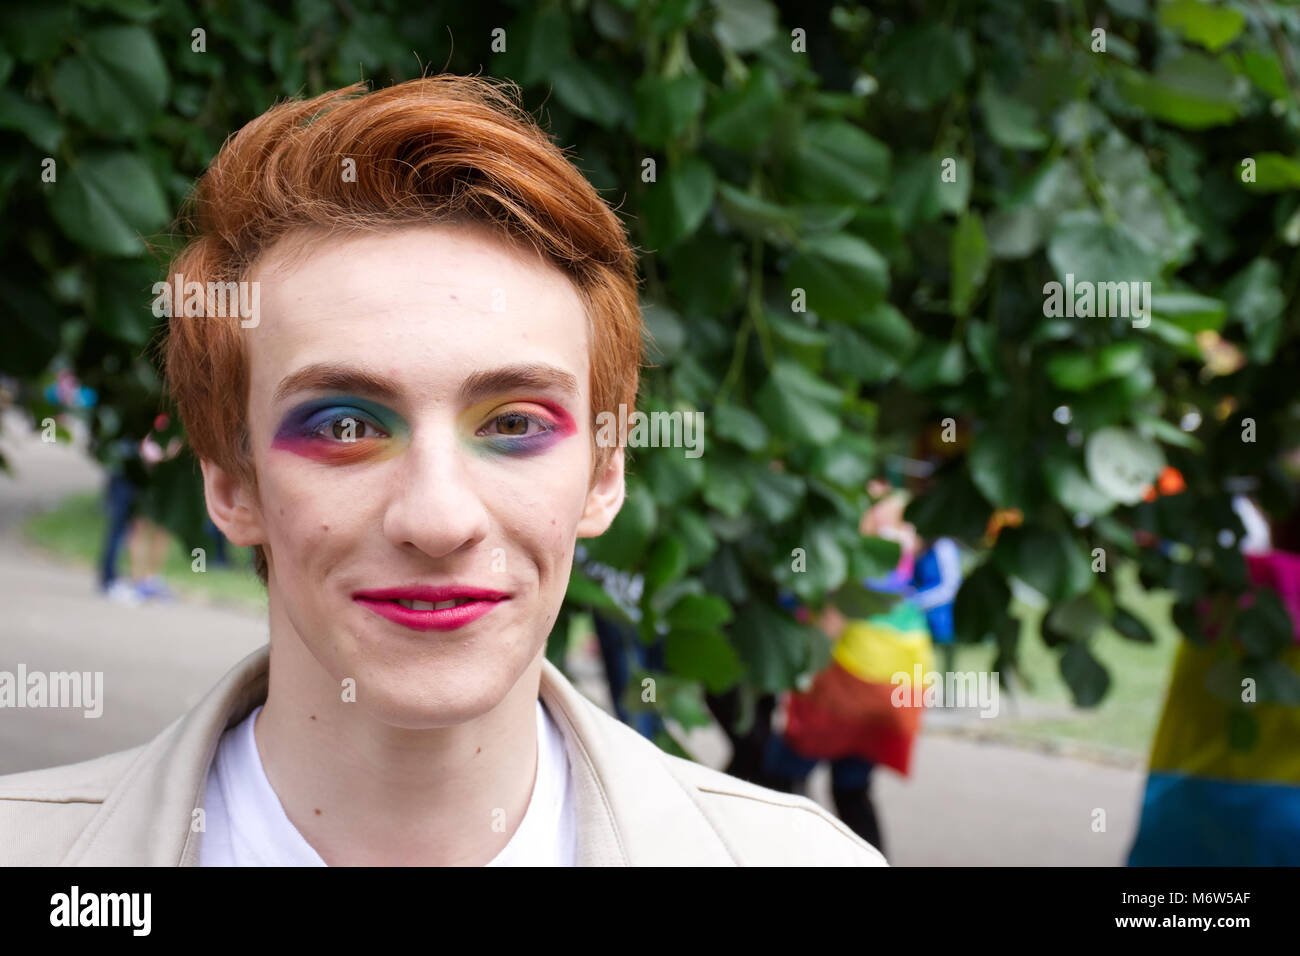 Briser les stéréotypes de genre masculin,UK,transgenres.LGBT Homme portant un miroir.out et fier.fierté LGBT event,Stoke on Trent, Staffordshire, Royaume-Uni.24 juin 2017. Banque D'Images